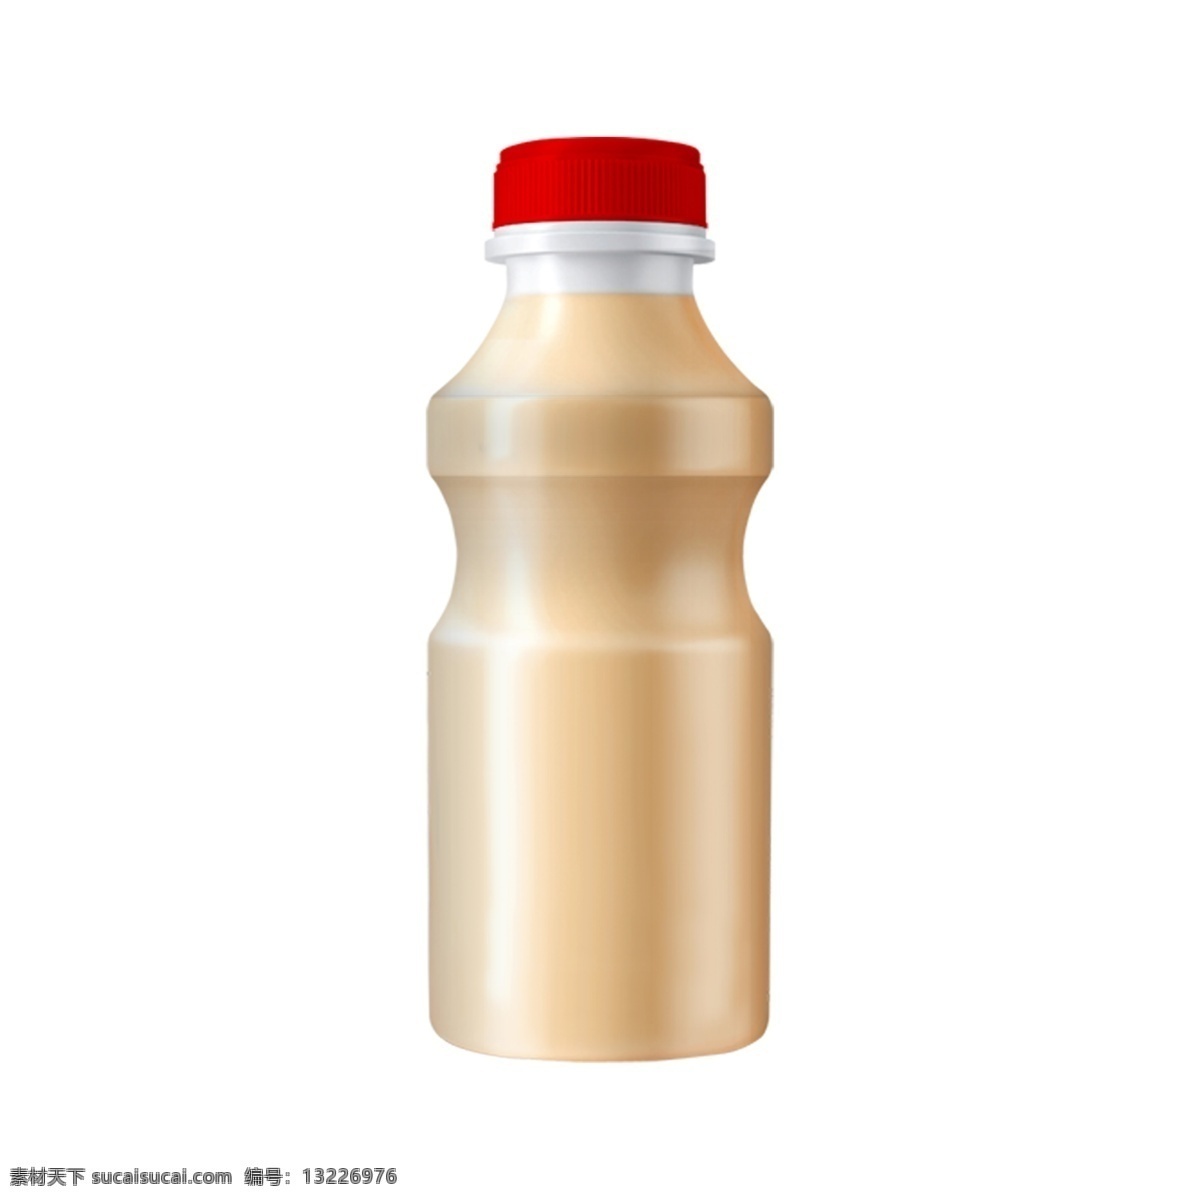 乳酸菌 包装 效果图 塑料瓶 饮料瓶 饮料包装 牛奶 分层